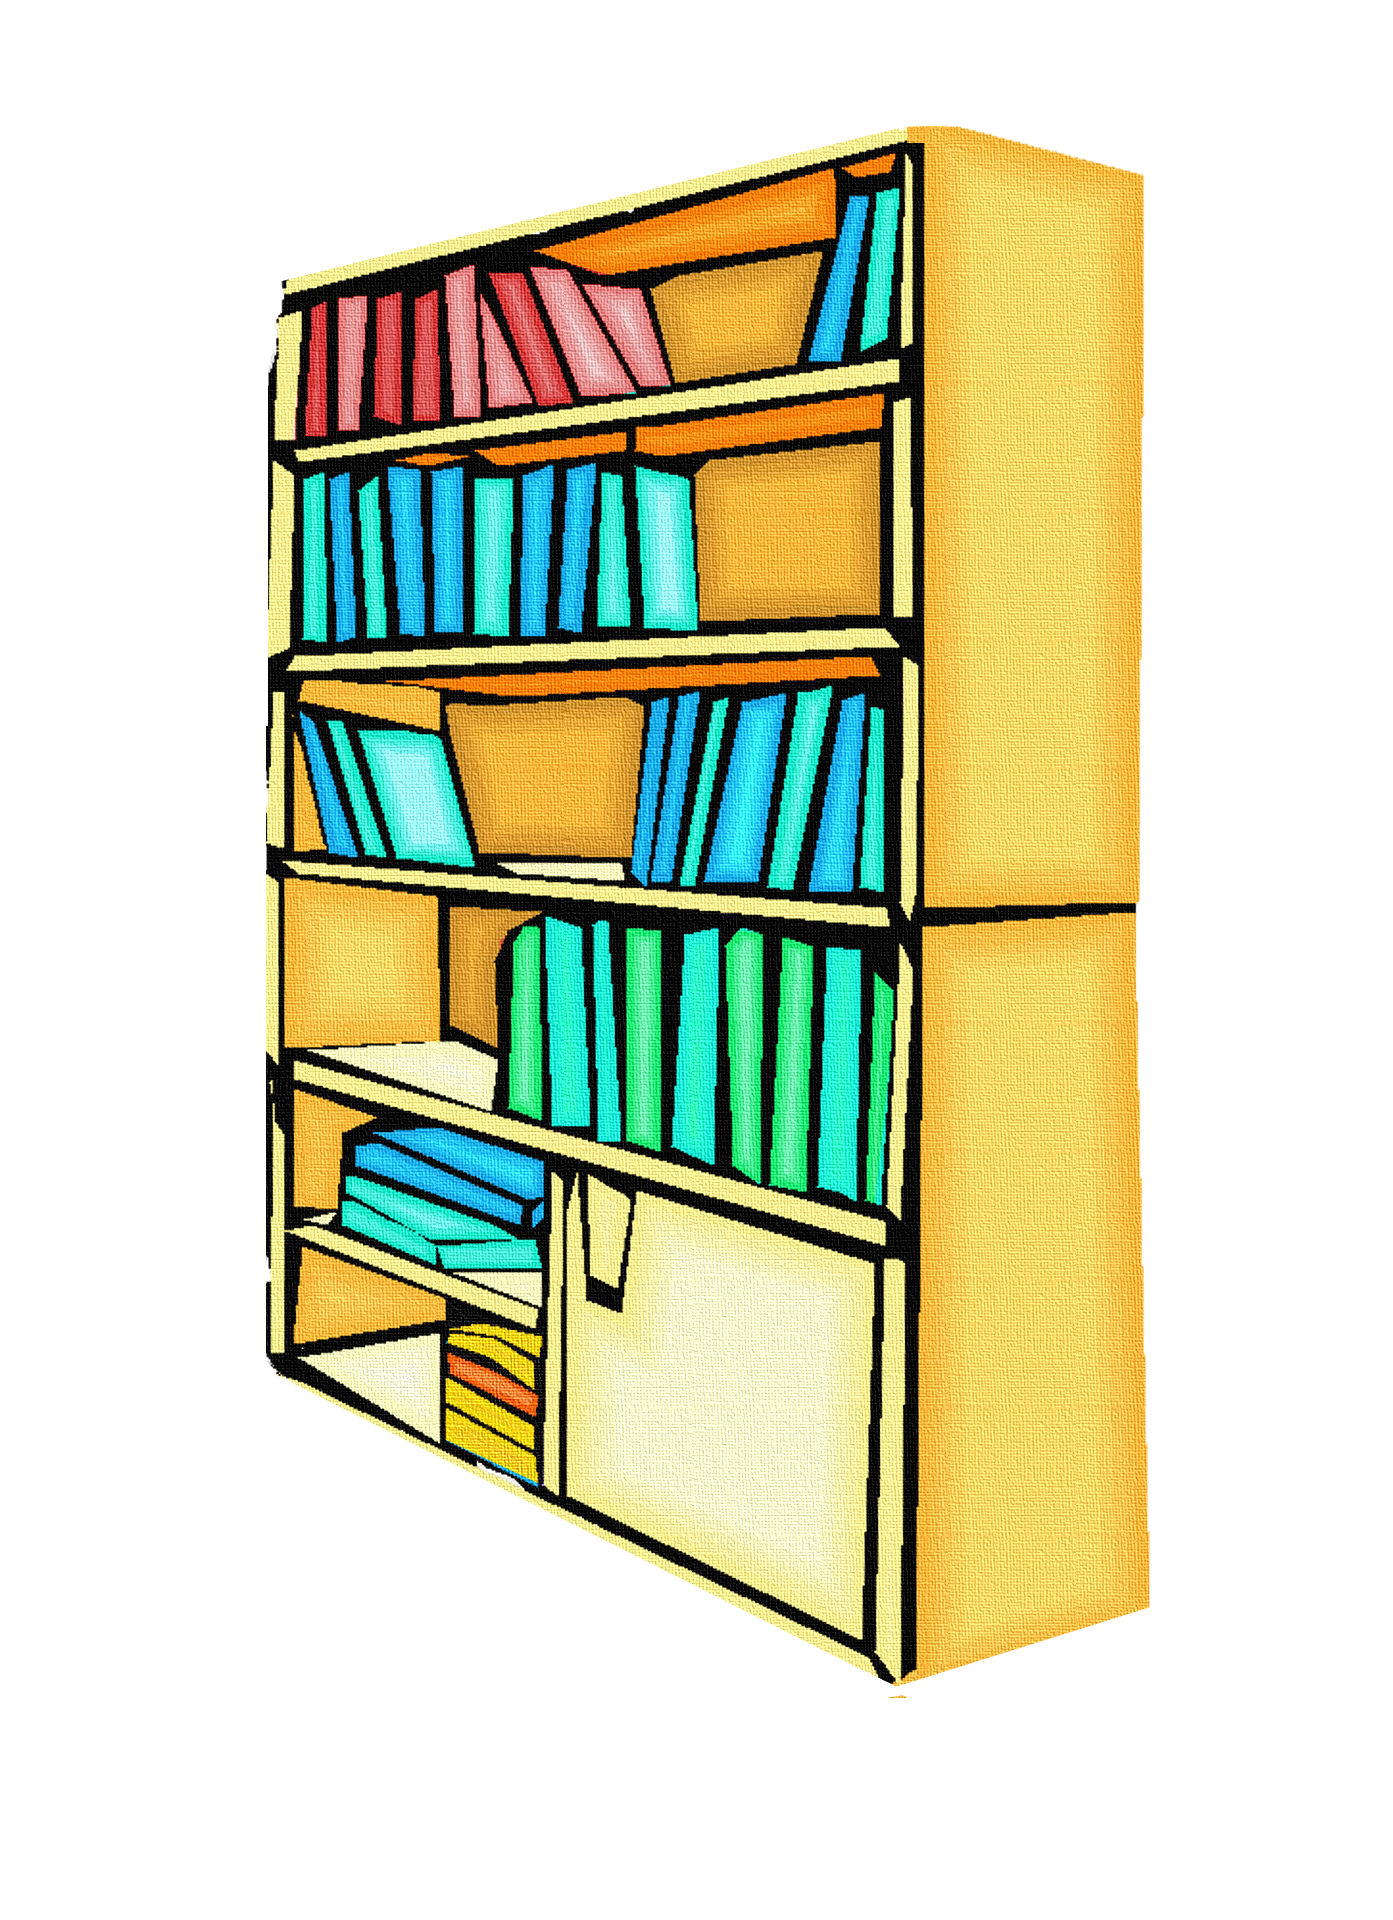 Книжный шкаф детям